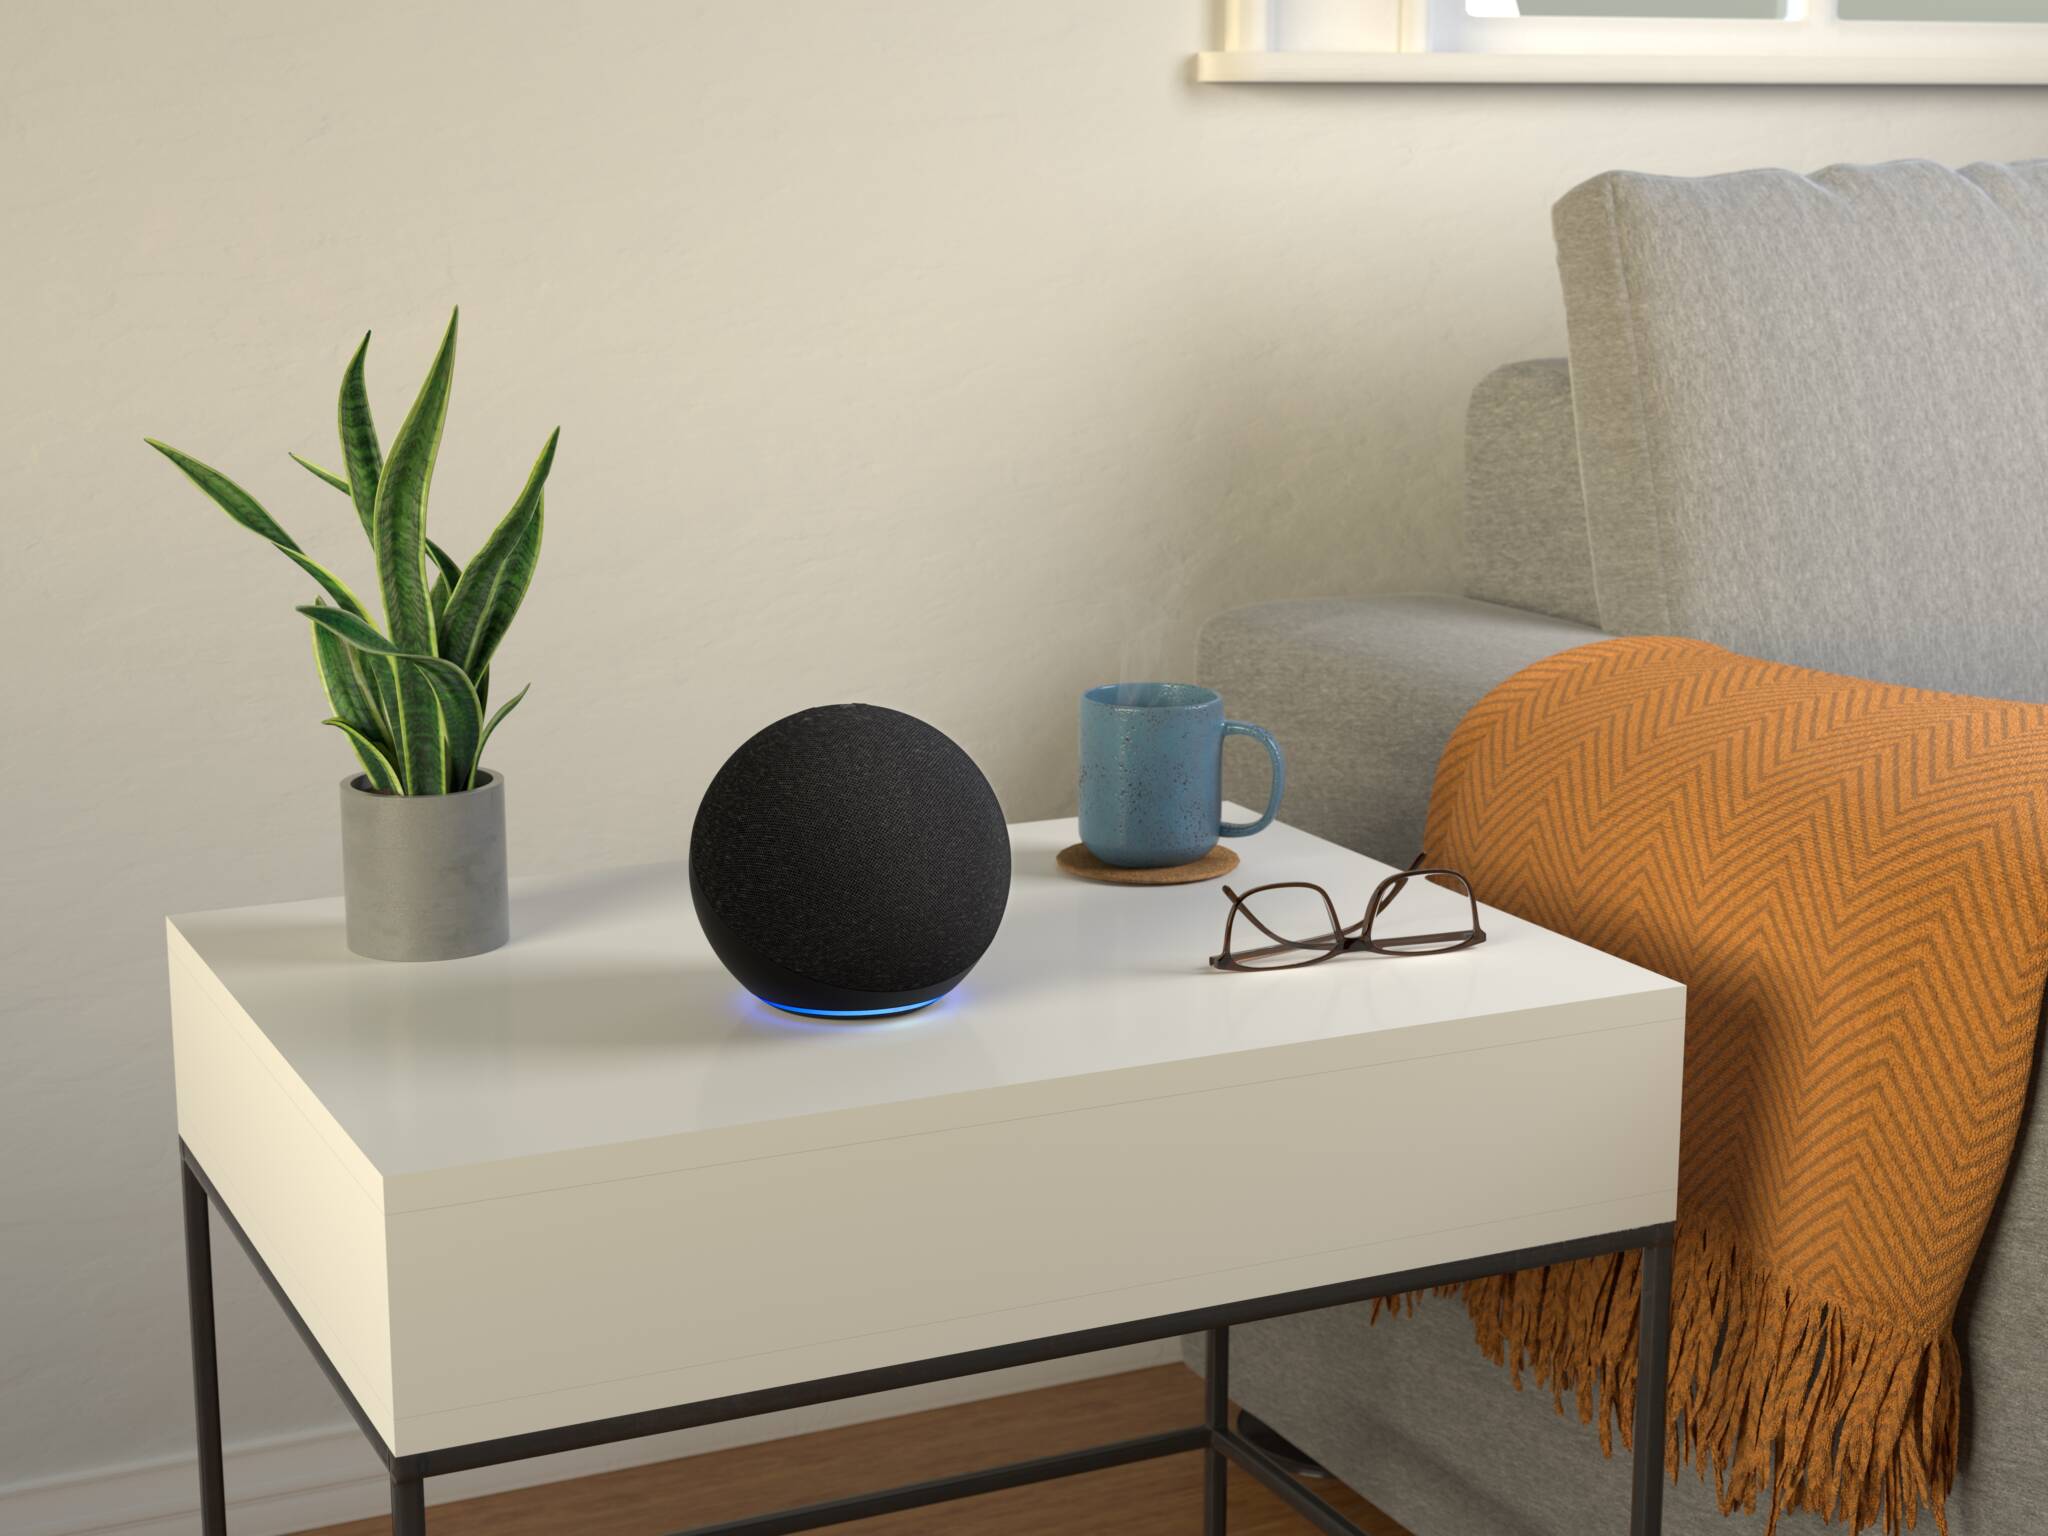 echo, Echo e Echo Dot já estão disponíveis para Portugal através da Amazon.es